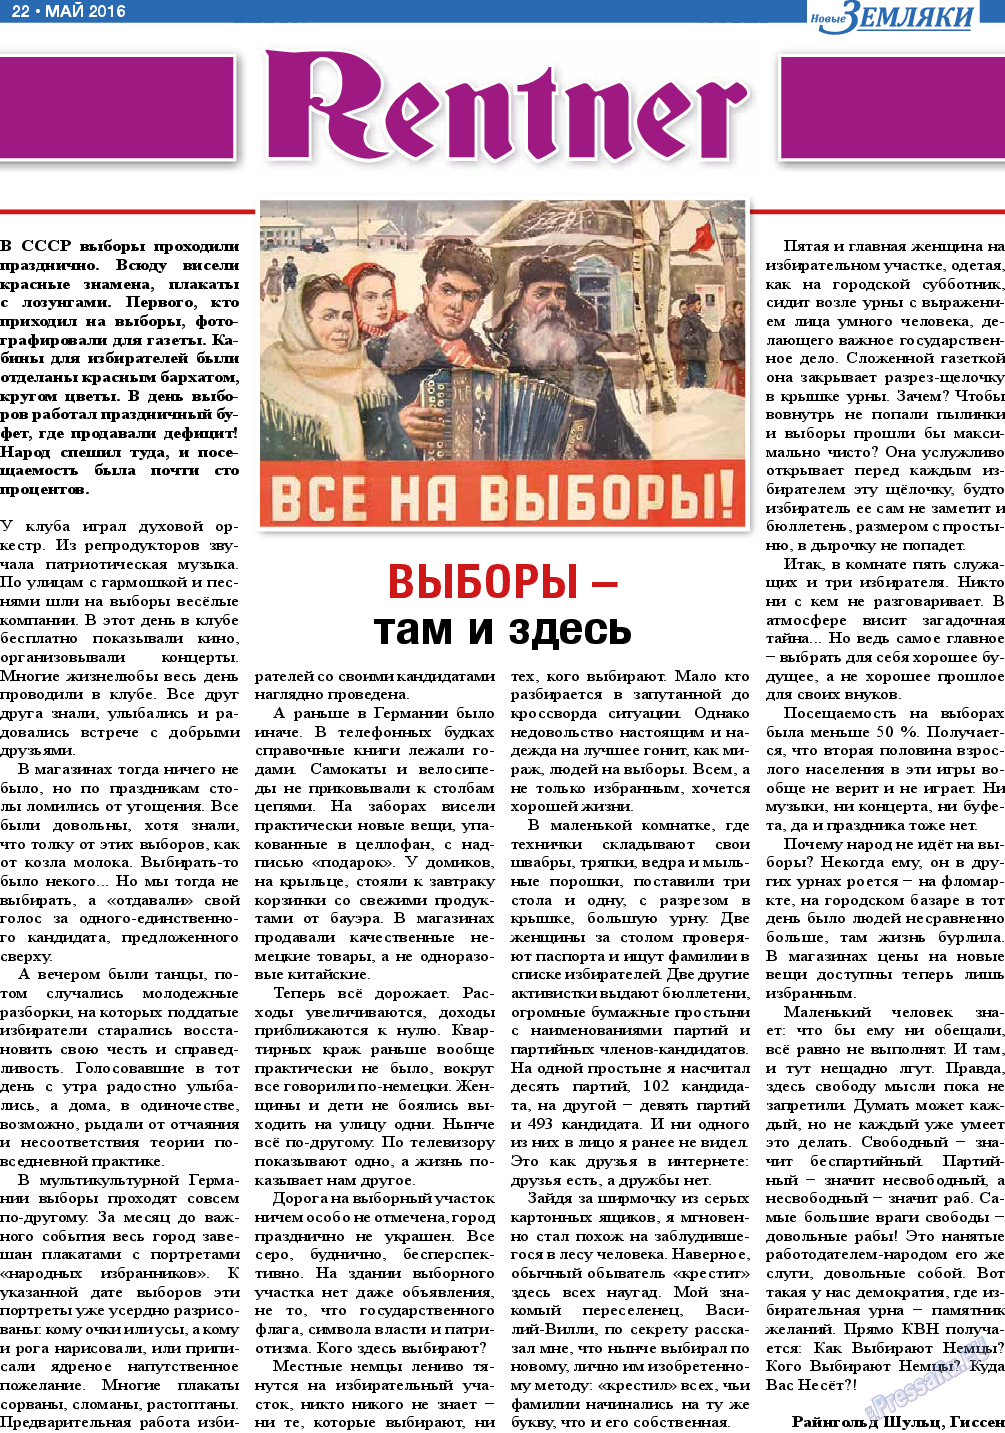 Новые Земляки, газета. 2016 №5 стр.22